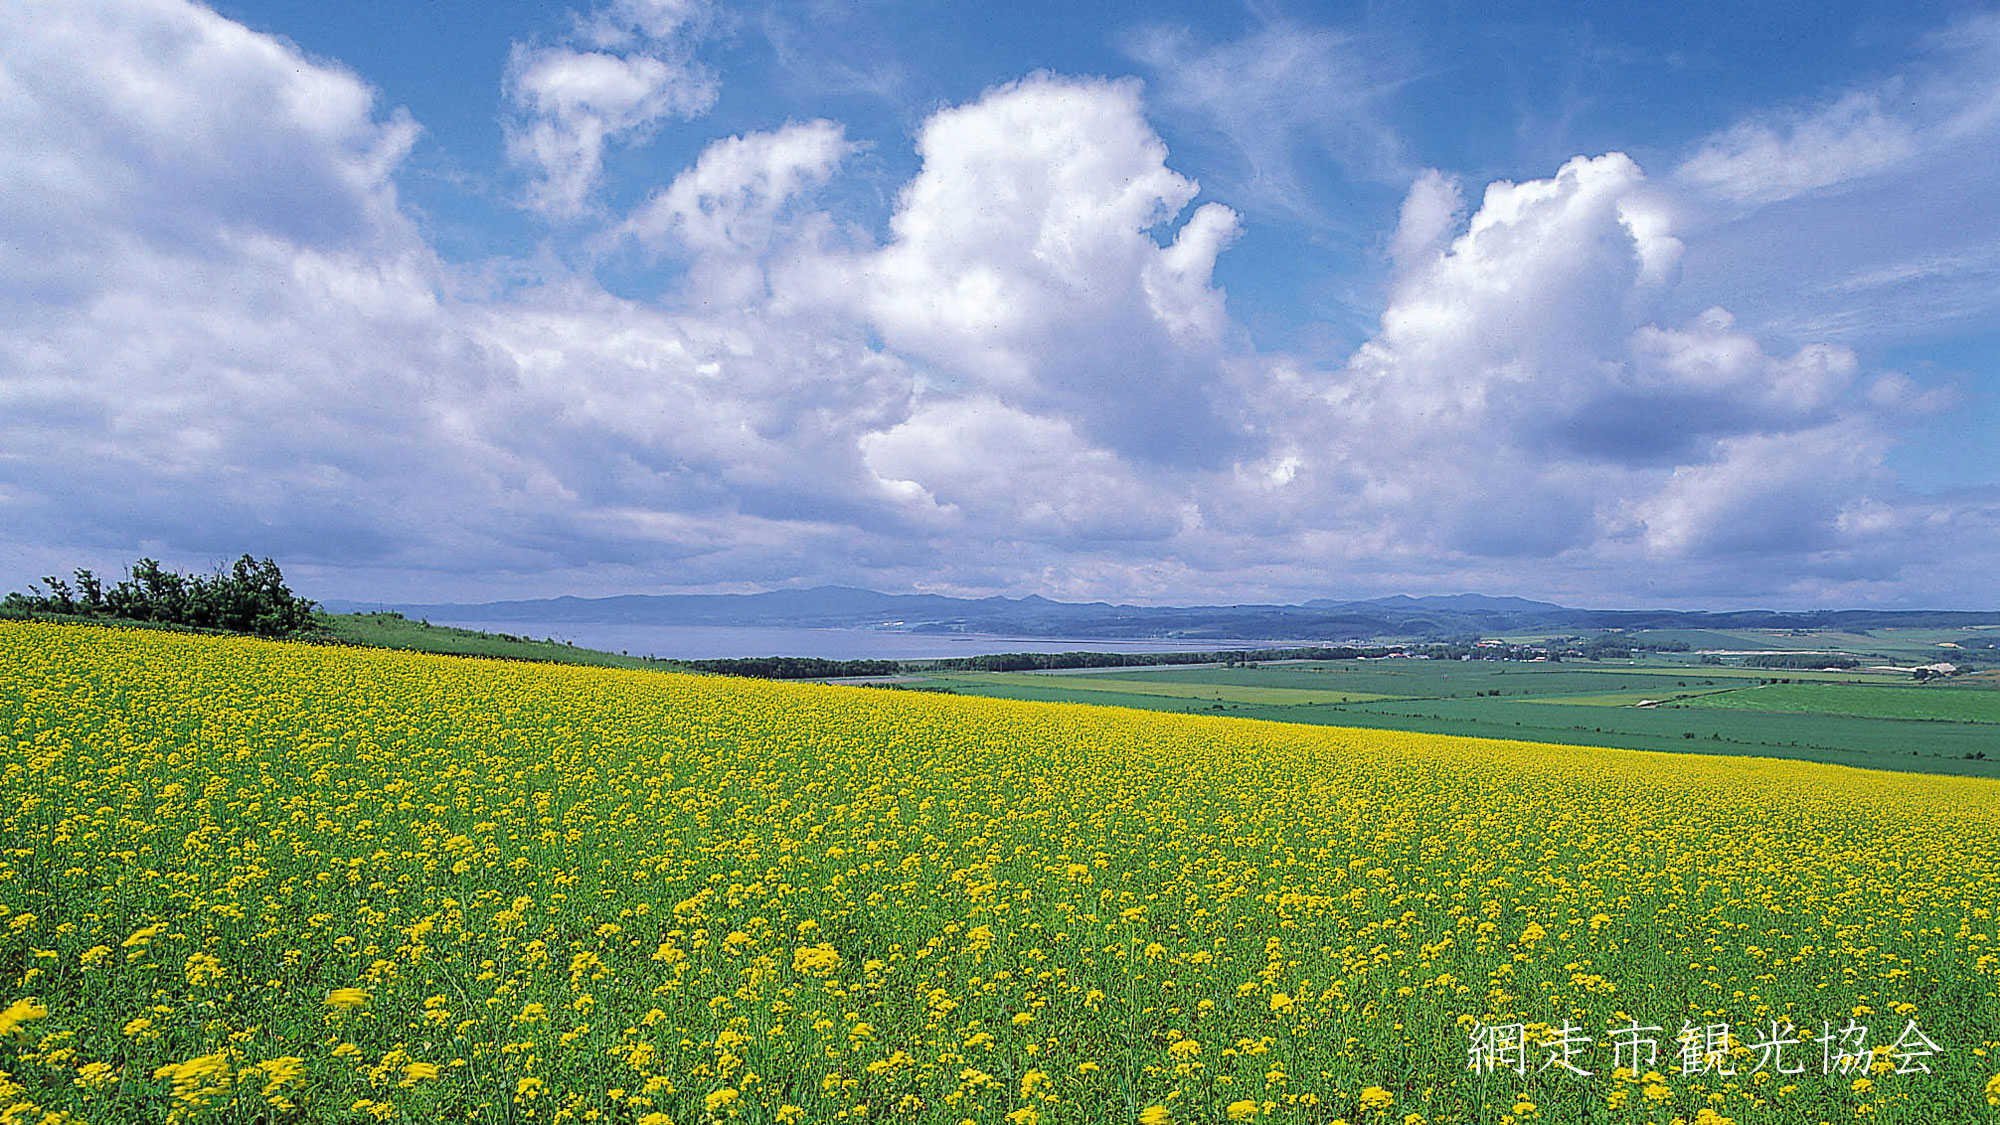 *［風景／夏］キラカシ畑。収穫が終わった畑には鮮やかな黄色の花が咲き見る人の目を楽しませてくれます 